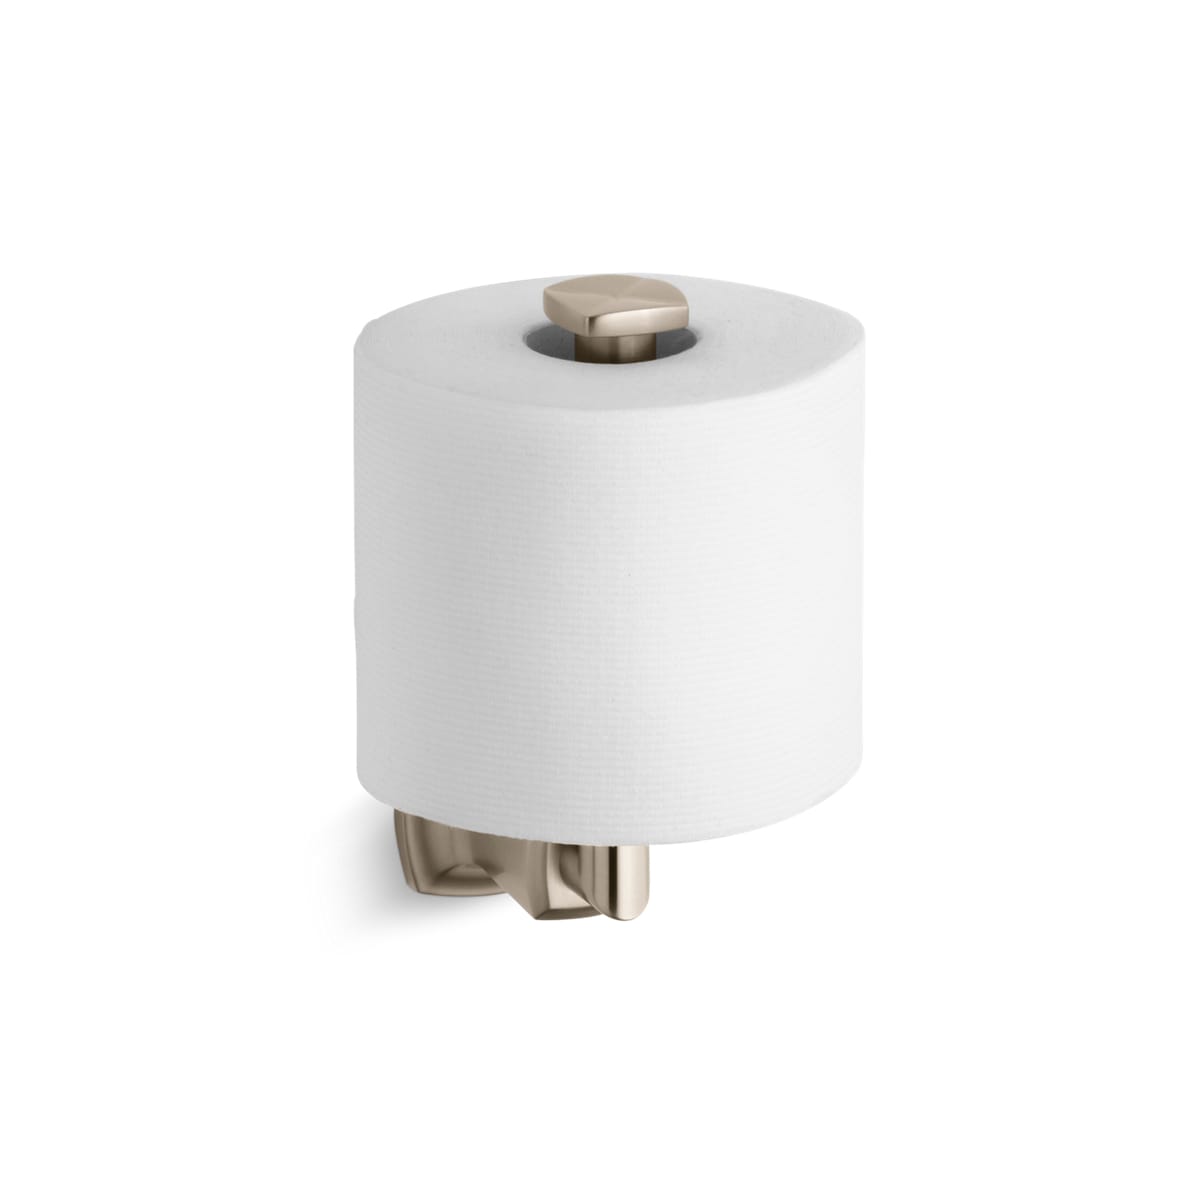 Kohler K-78383 Components Vertical Toilet Paper Holder Polished Chrome